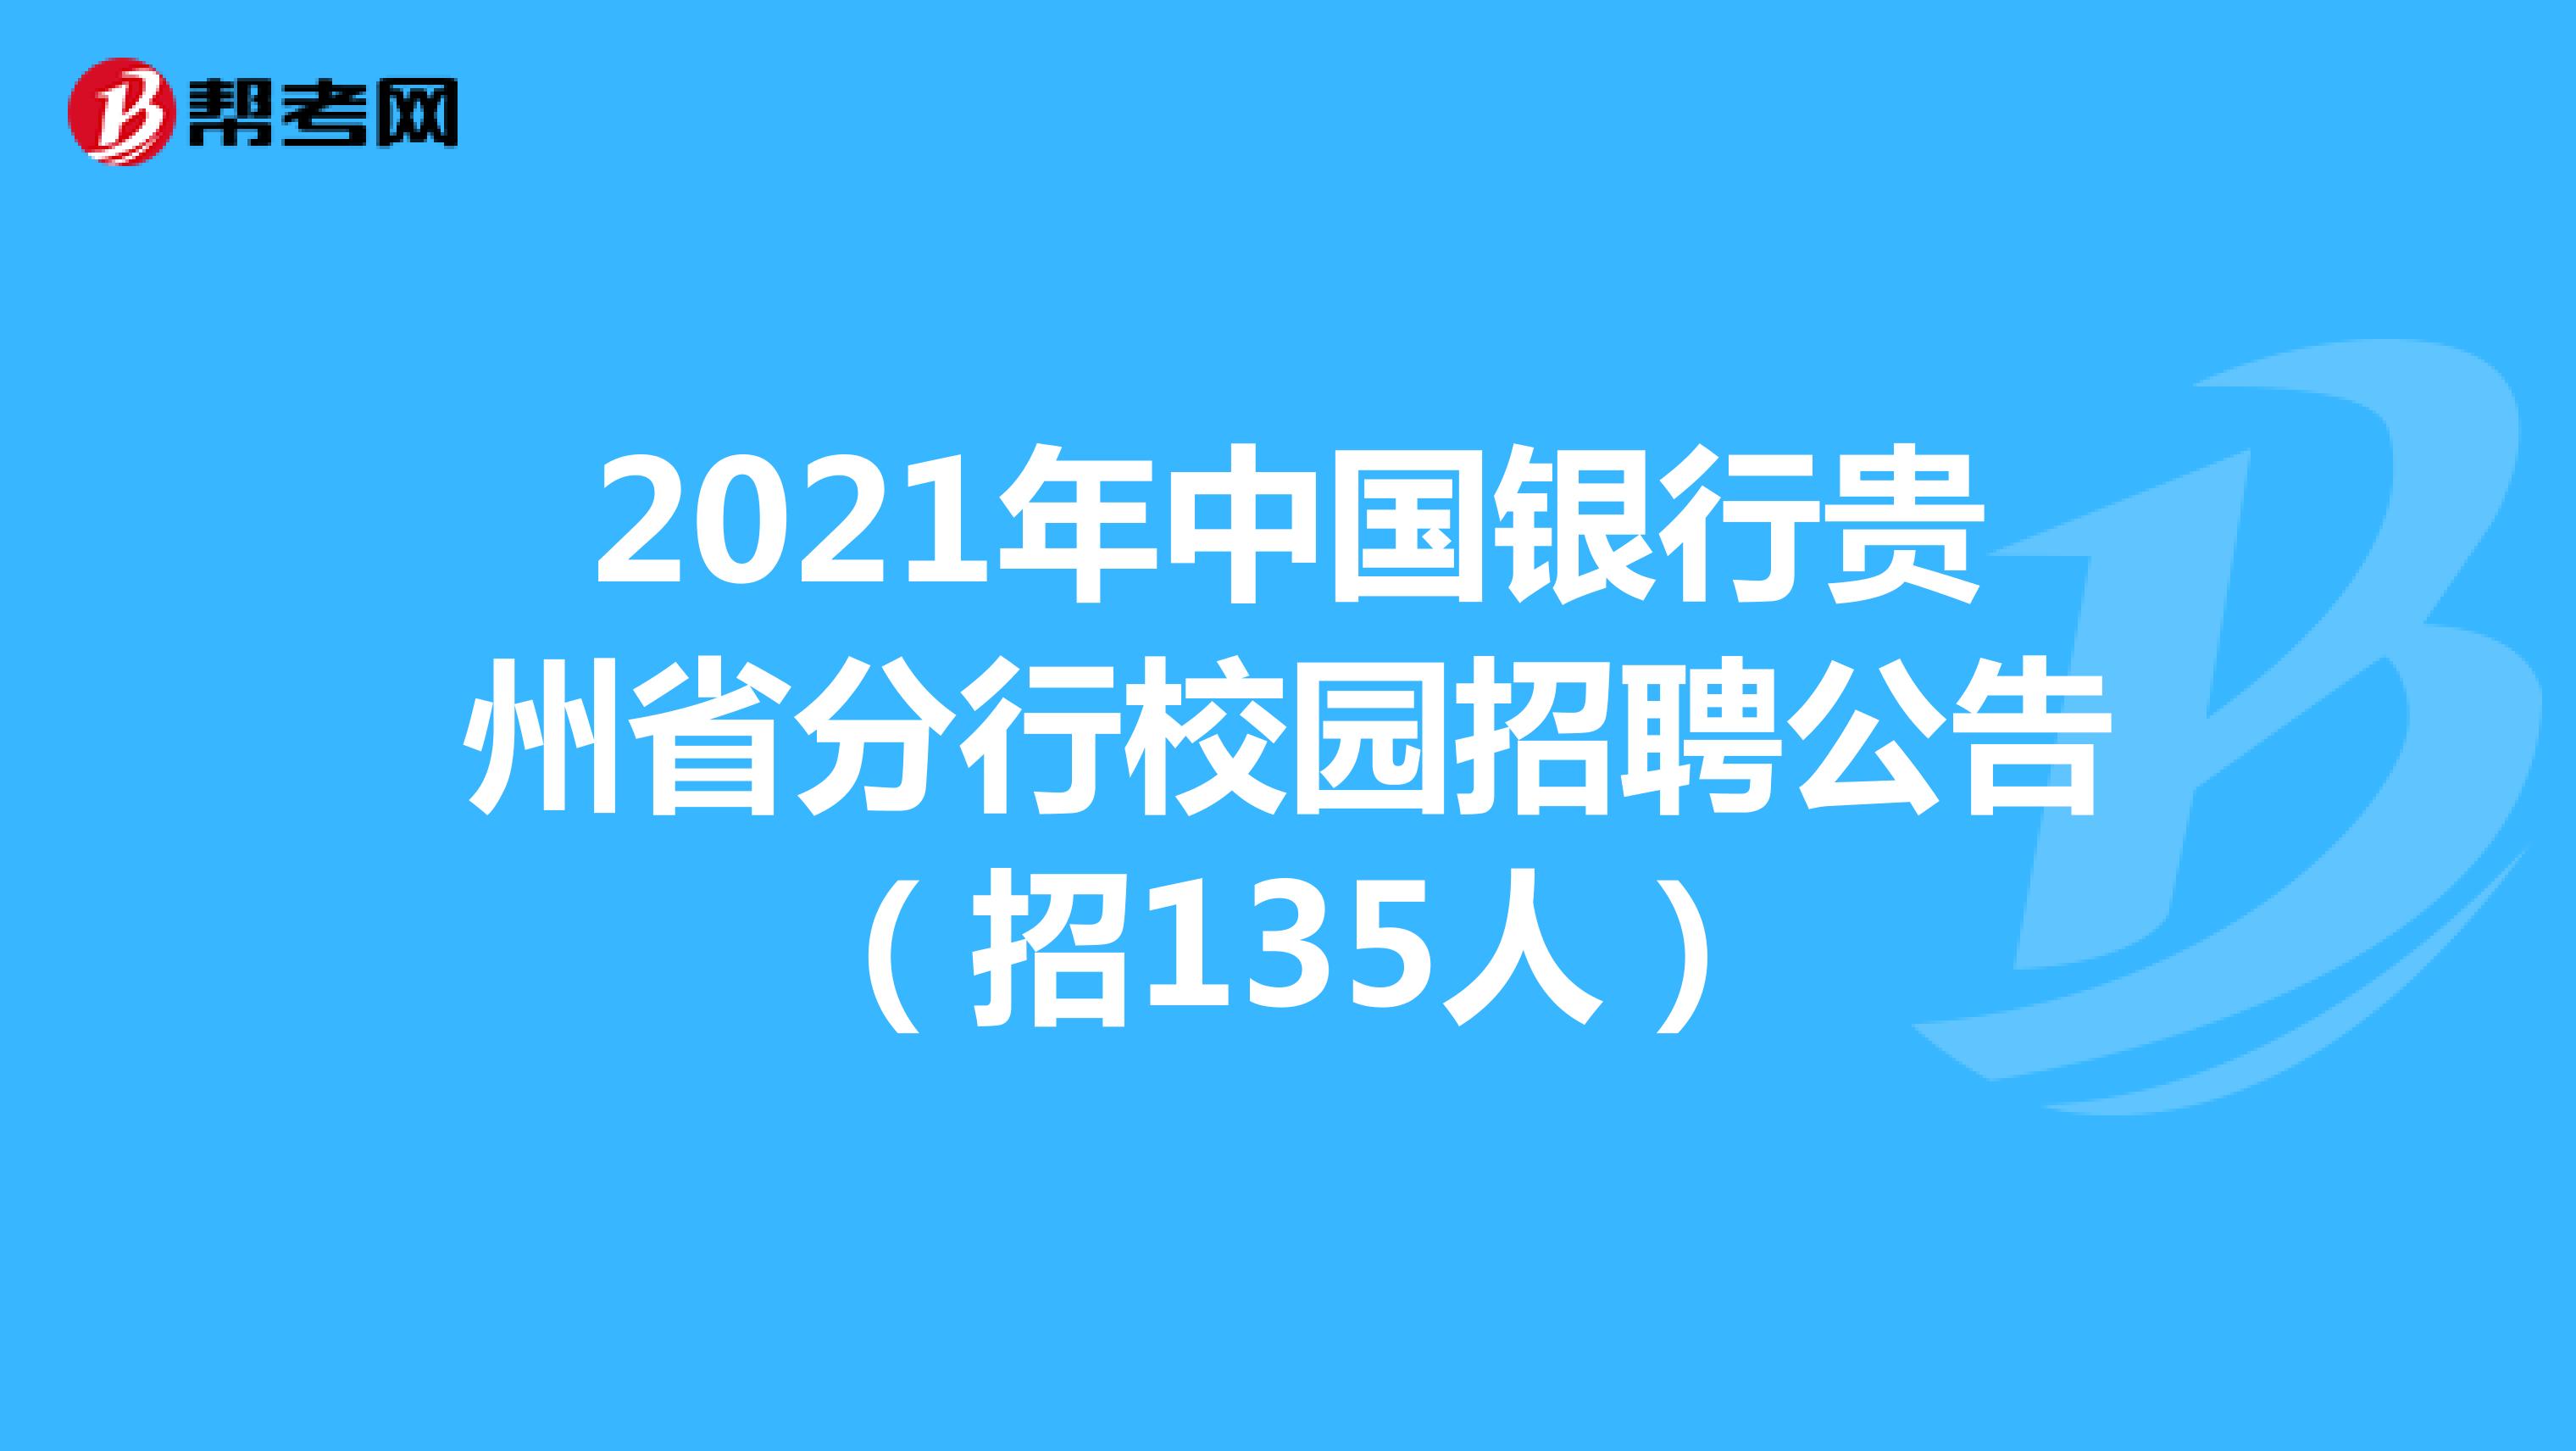 2021年中国银行贵州省分行校园招聘公告（招135人）